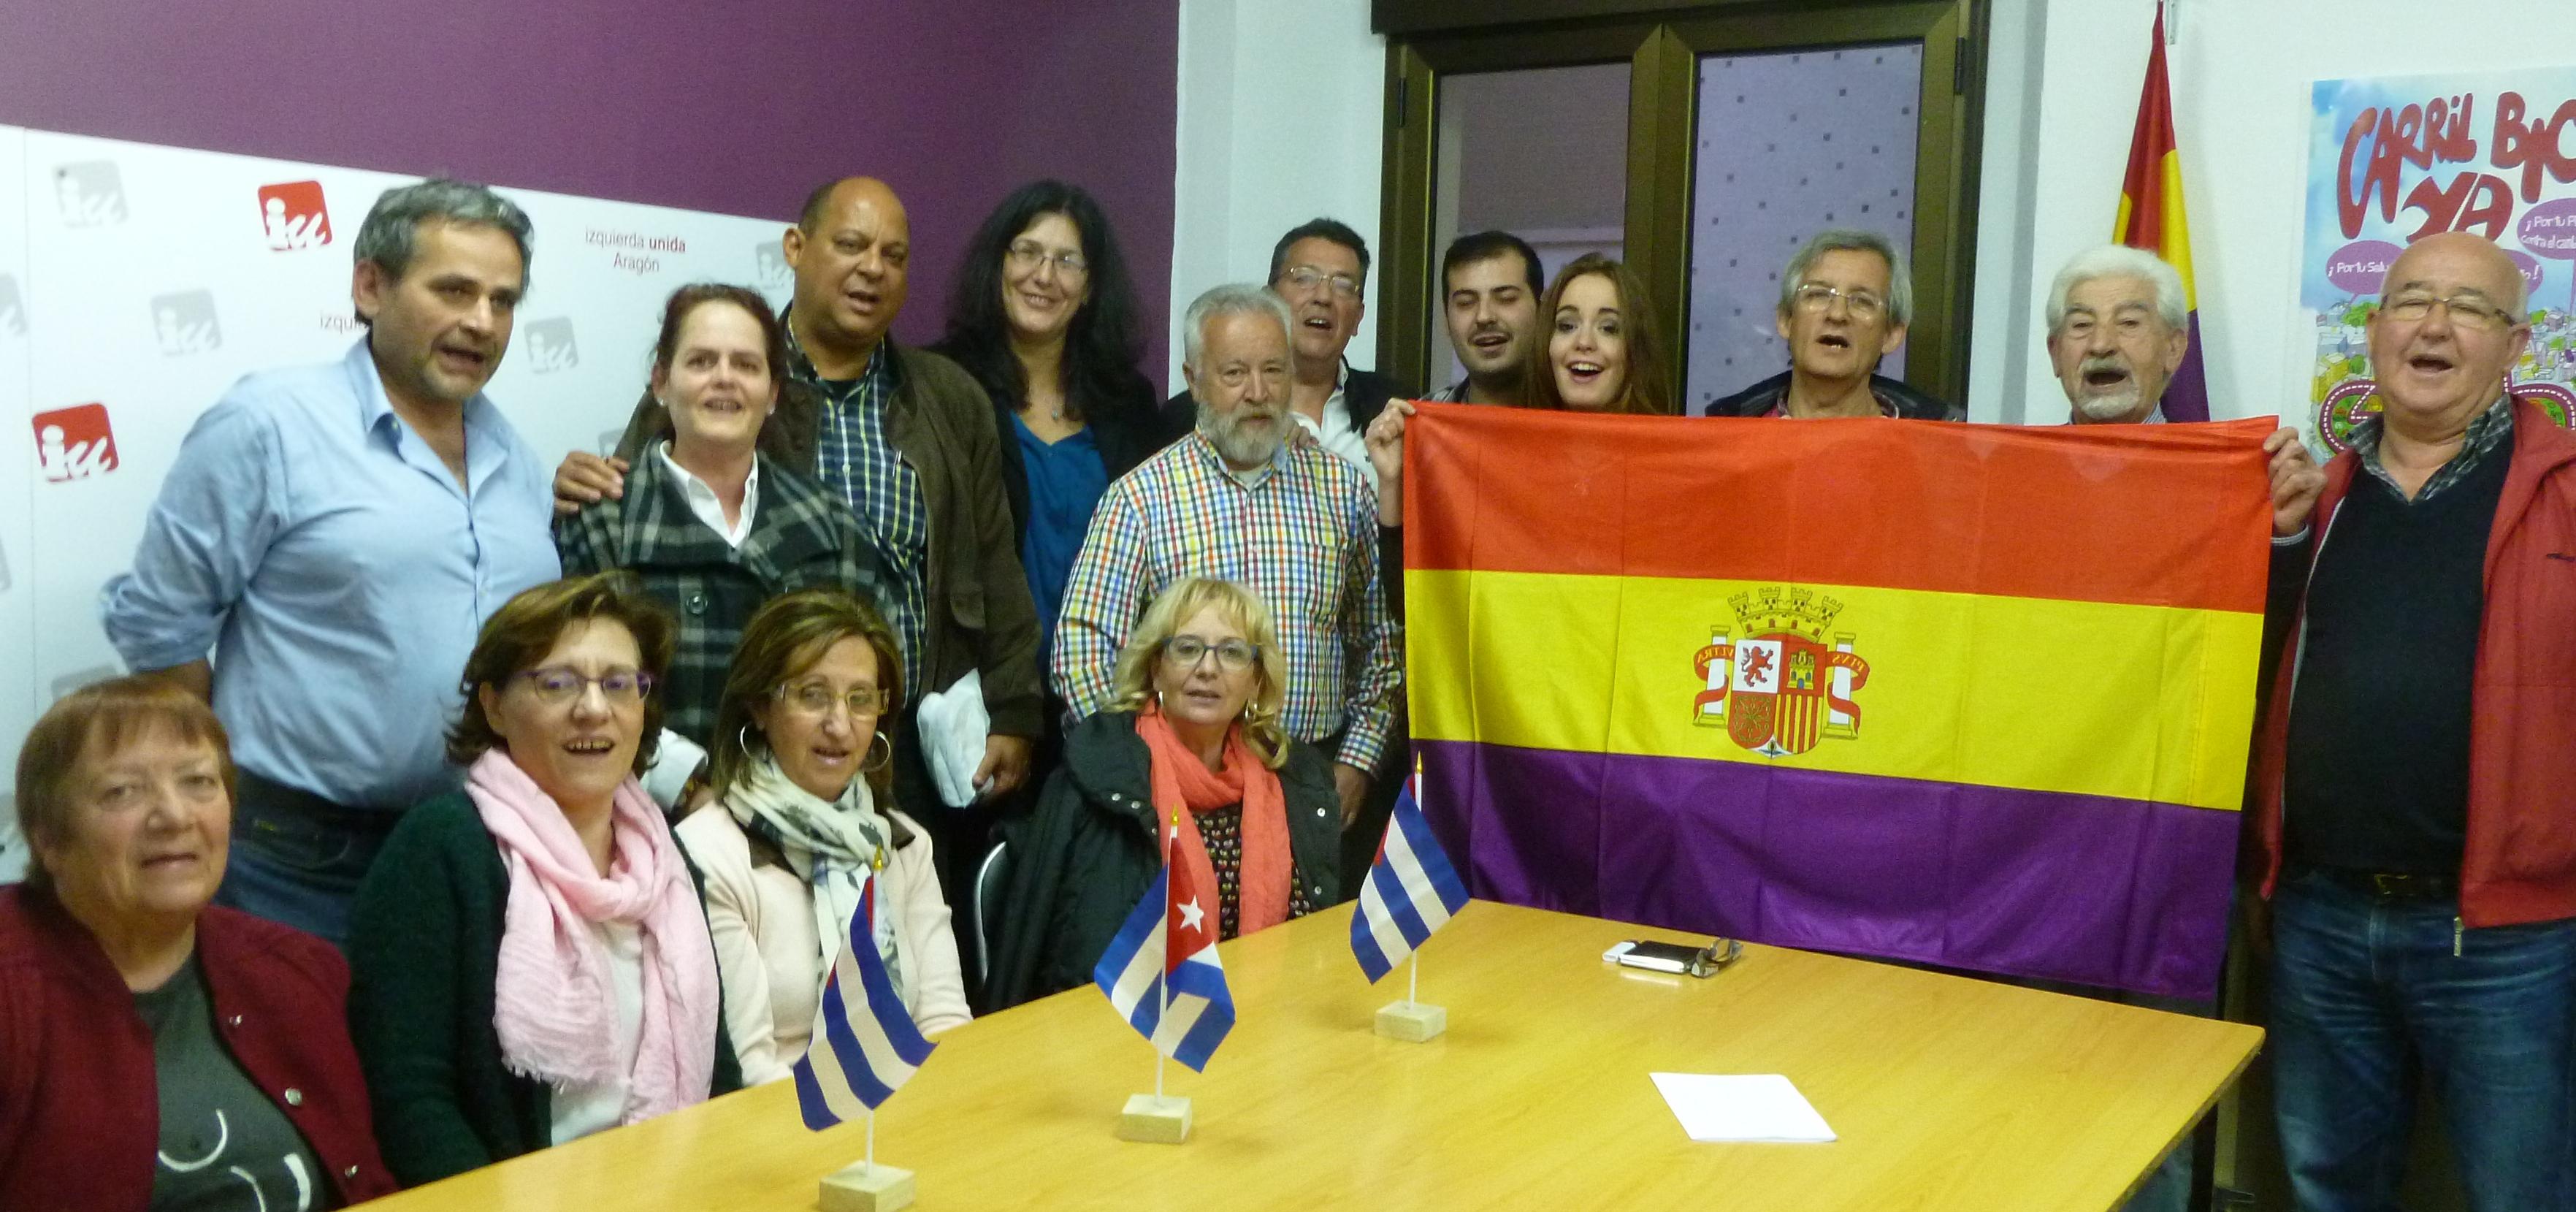 Encuentro de militantes de IU en Teruel con el Consulado de Cuba